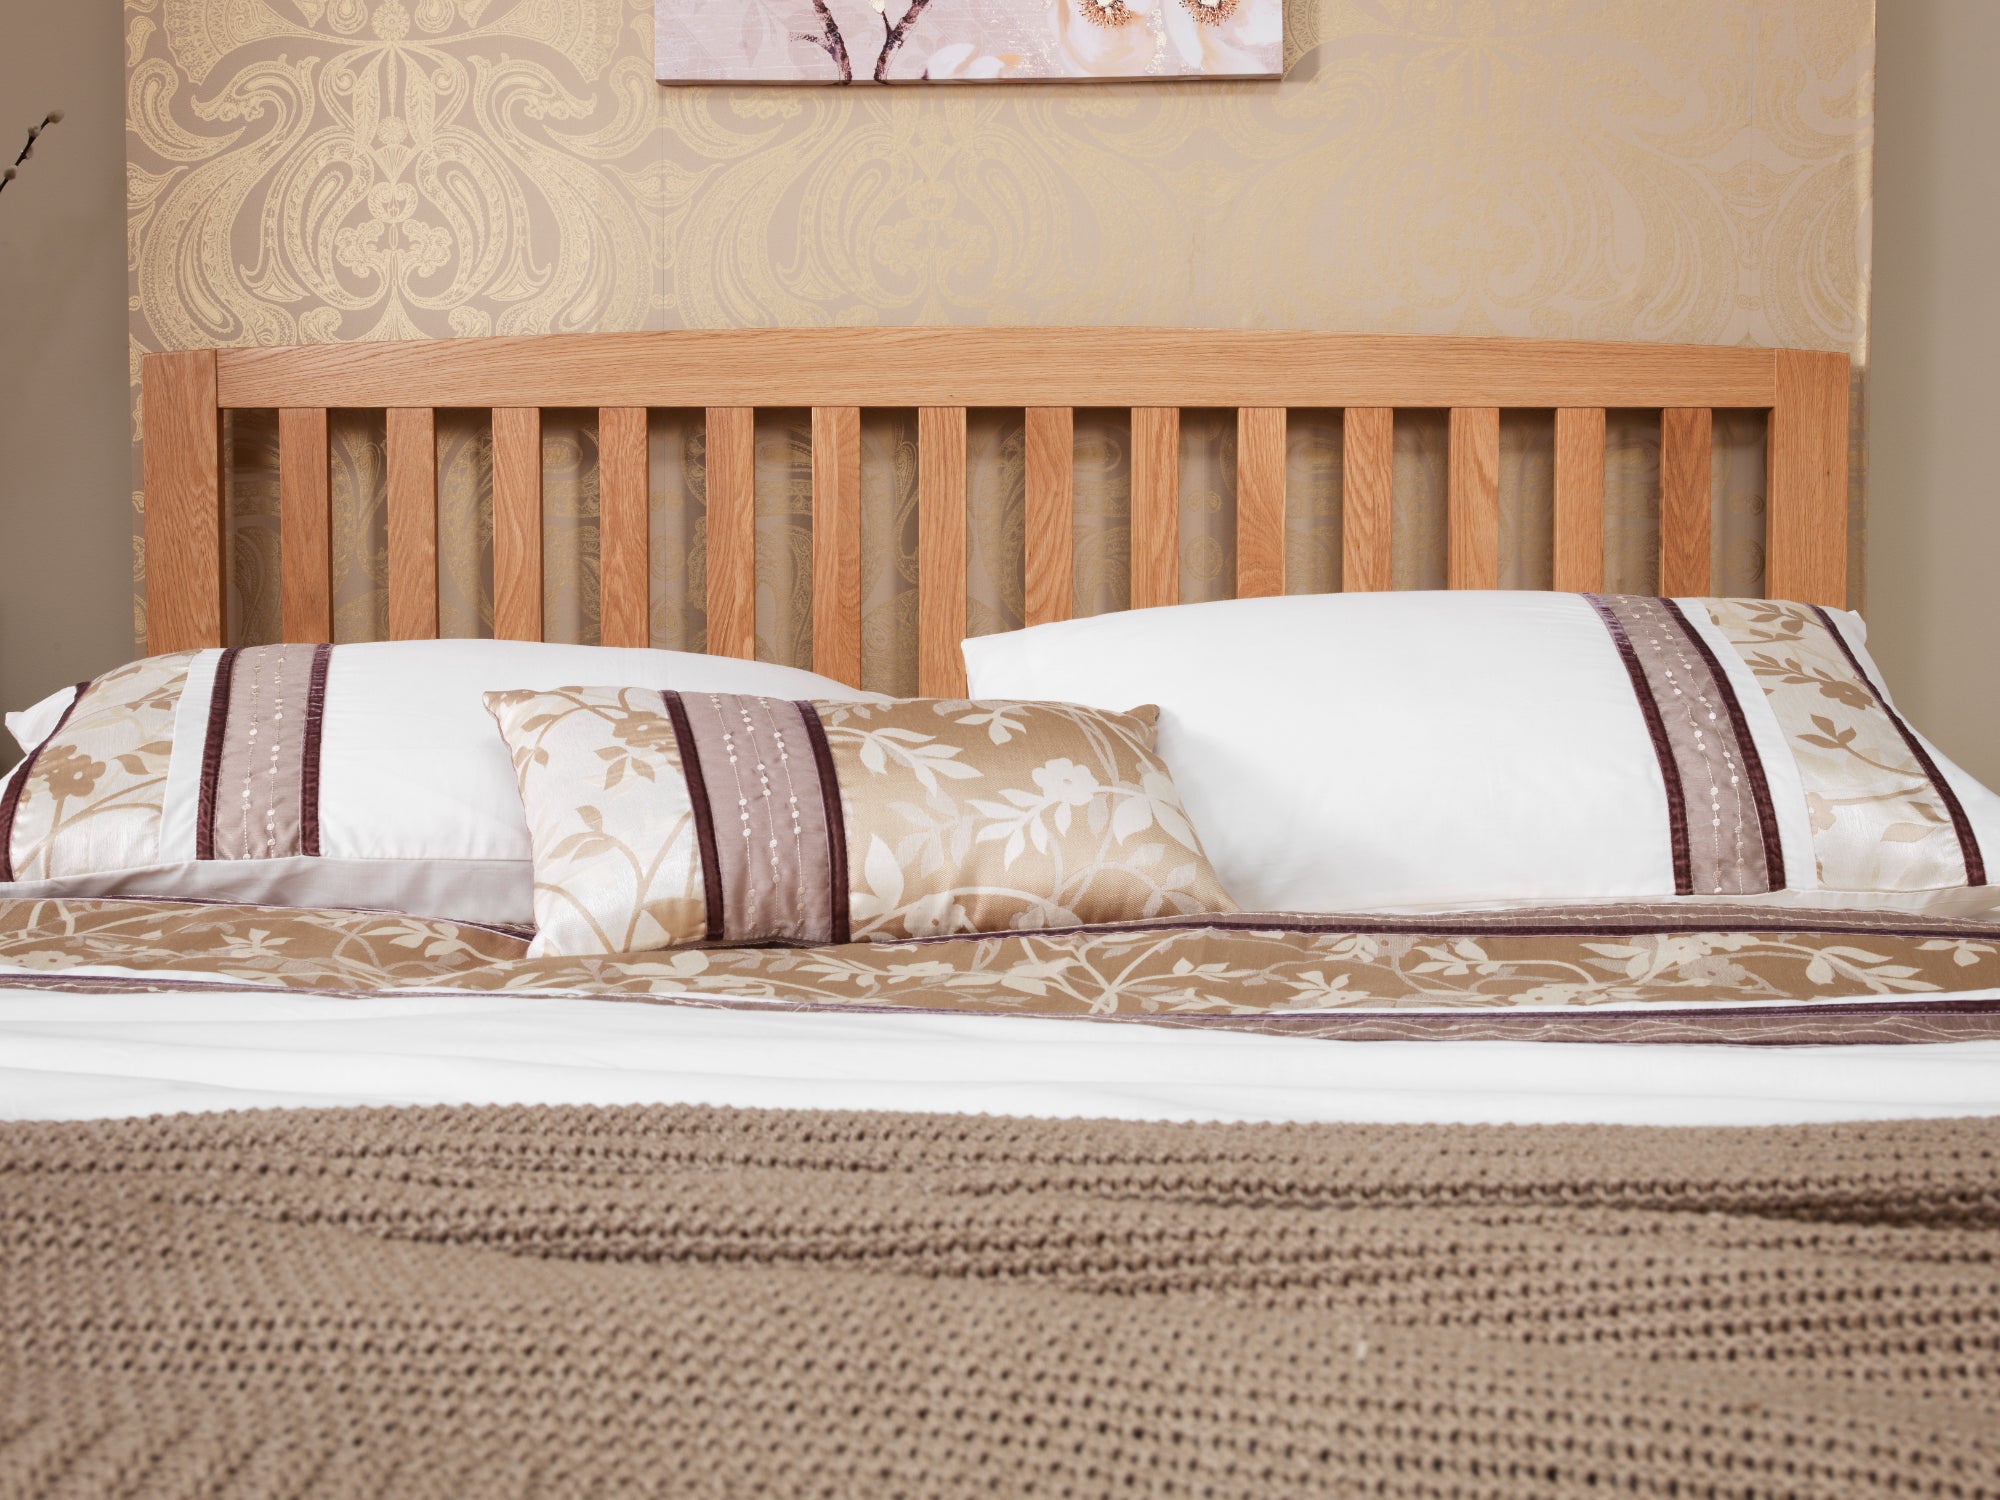 Serenity Oak Wooden Bed Frame